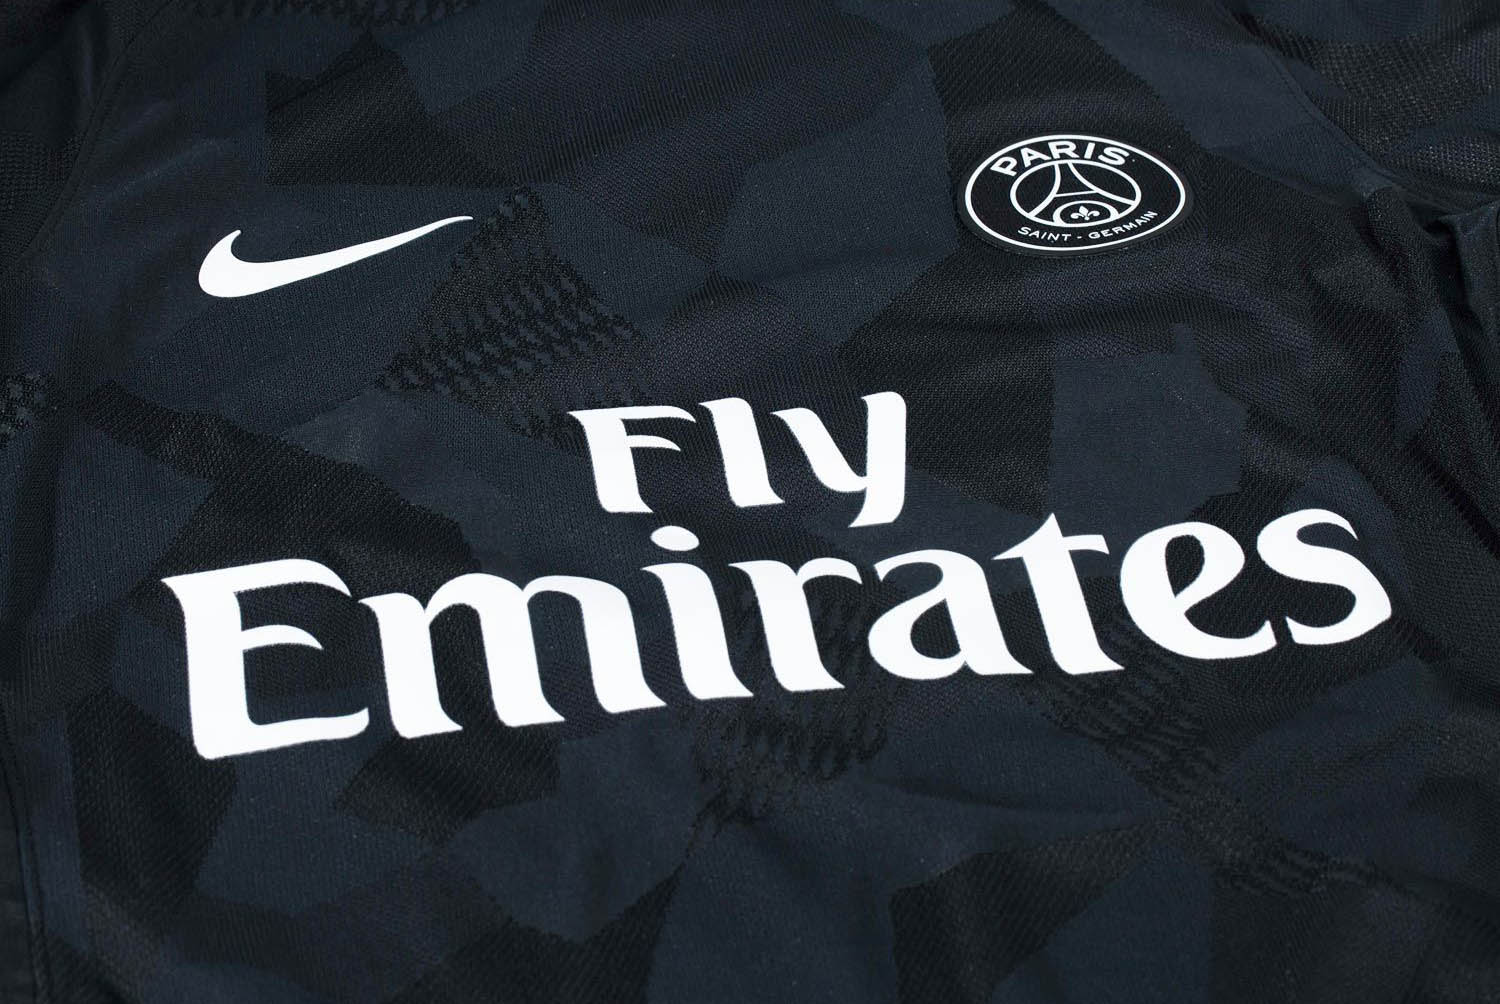 Paris Saint-Germain 17-18 Third Kit Released - Footy Headlines